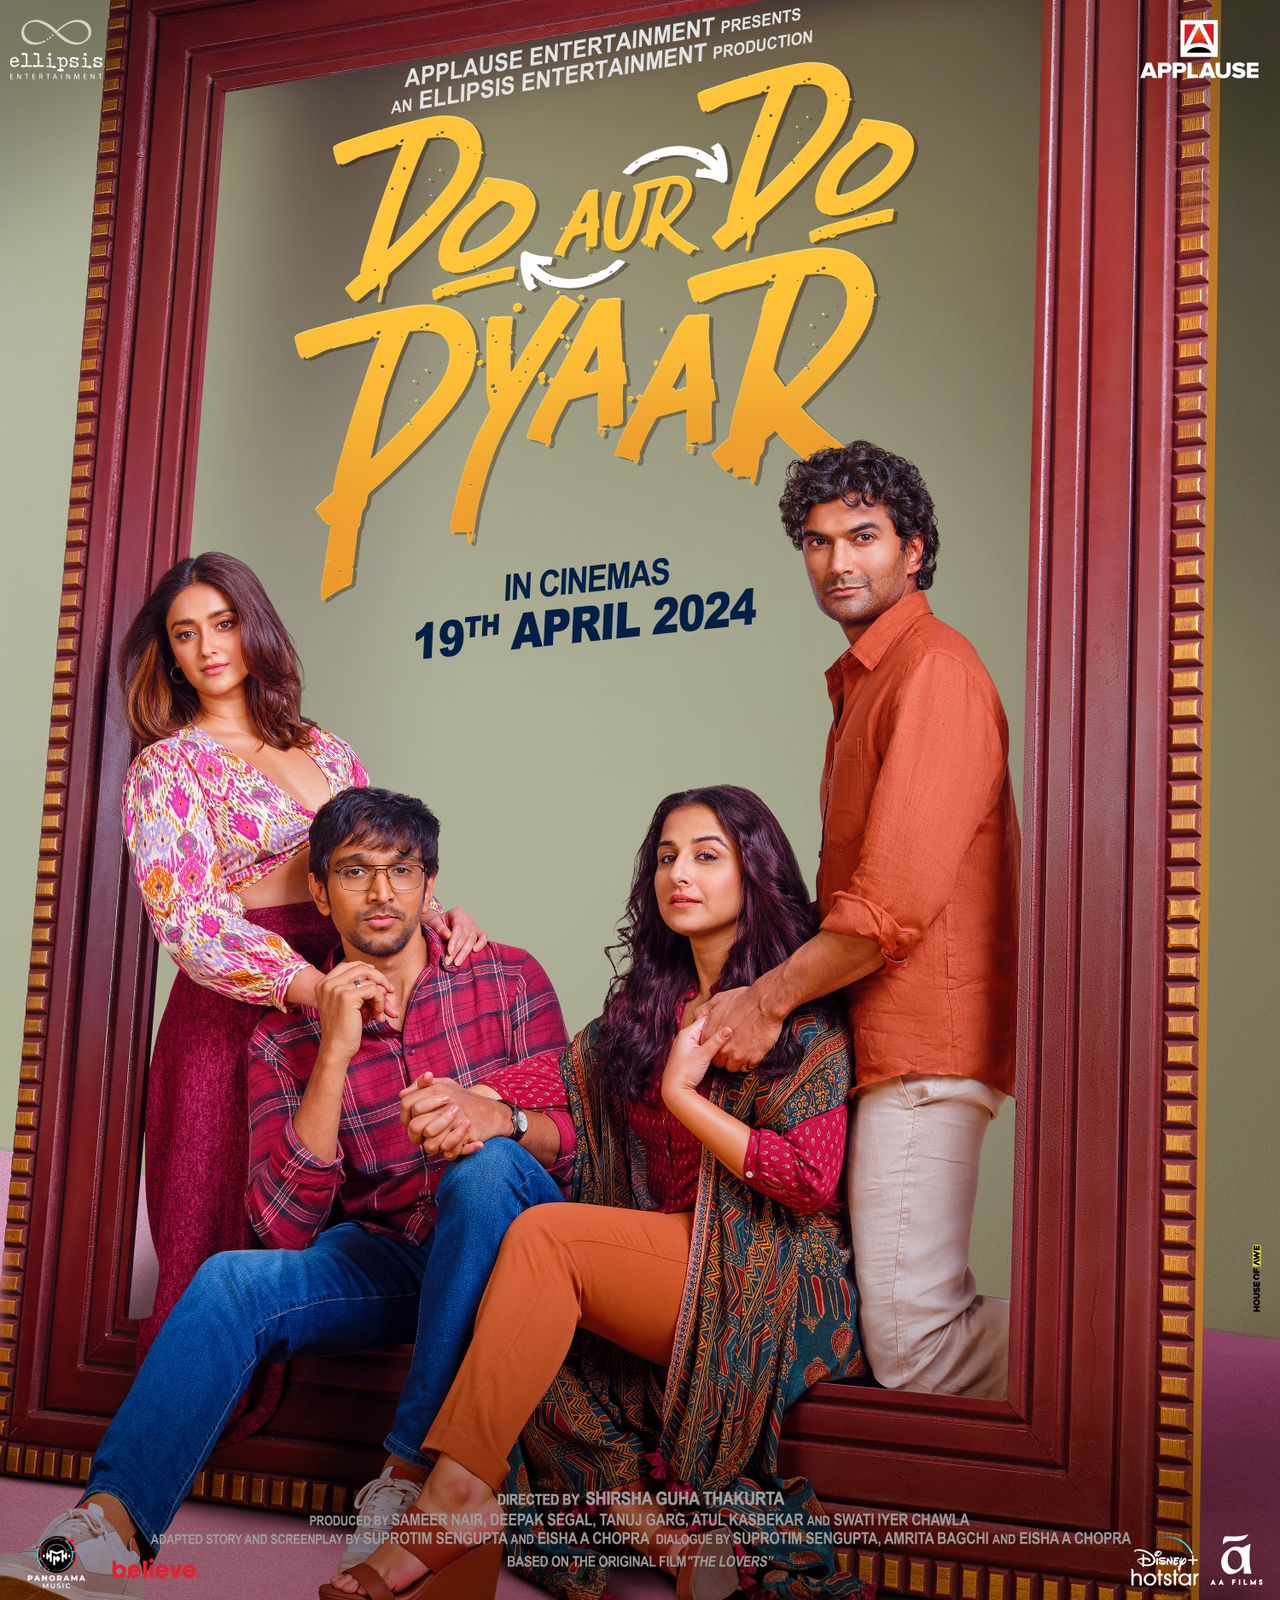 Romantic Film 'Do Aur Do Pyaar' Set for Release on April 19